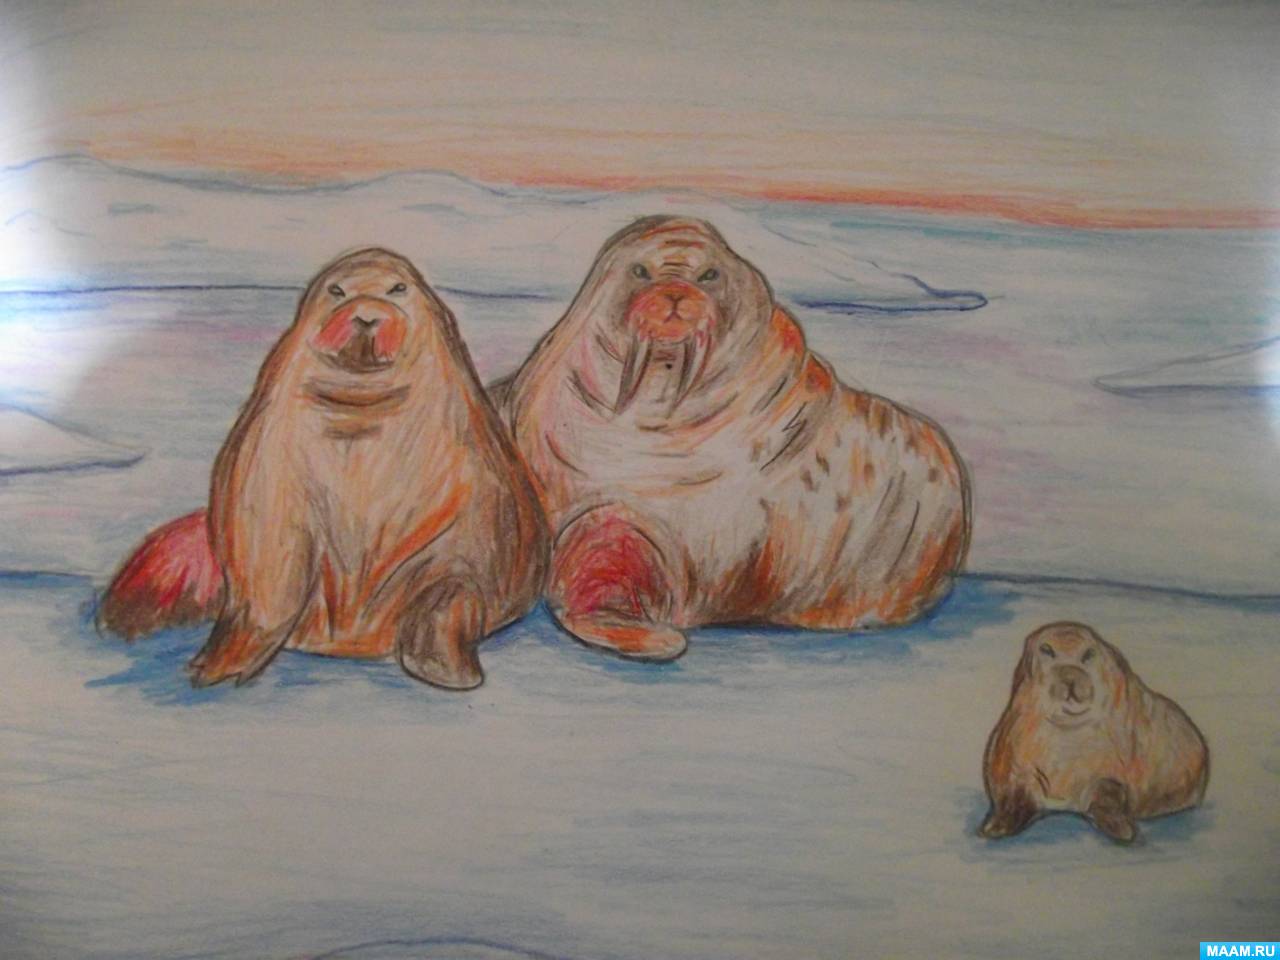 Мастер-класс по рисованию цветными карандашами «Семейство моржей»